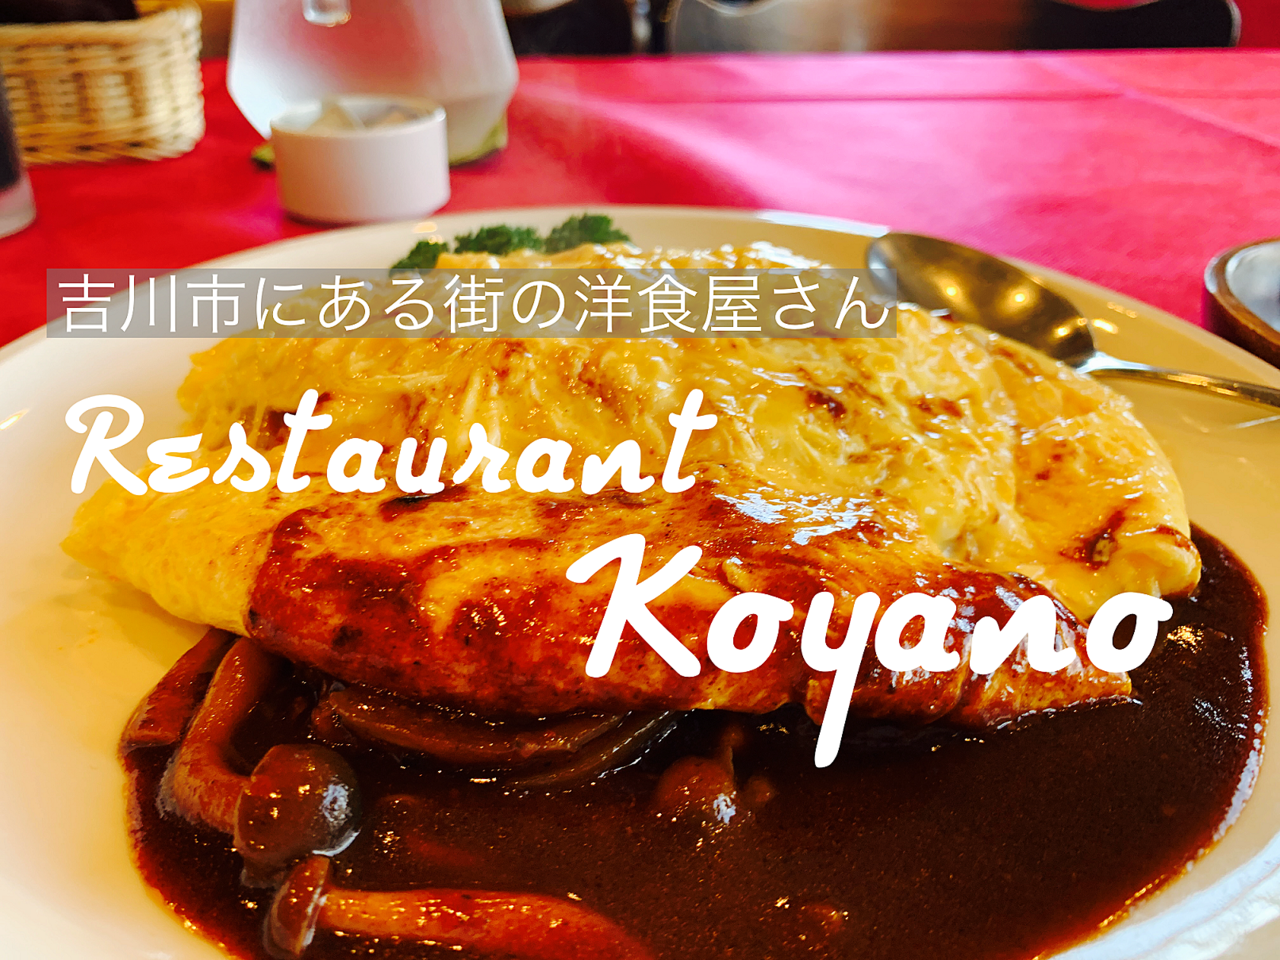 【吉川市食べ歩きブログ】吉川市栄町にある洋食屋「レストラン コヤノ」さんへ行ってきました♪